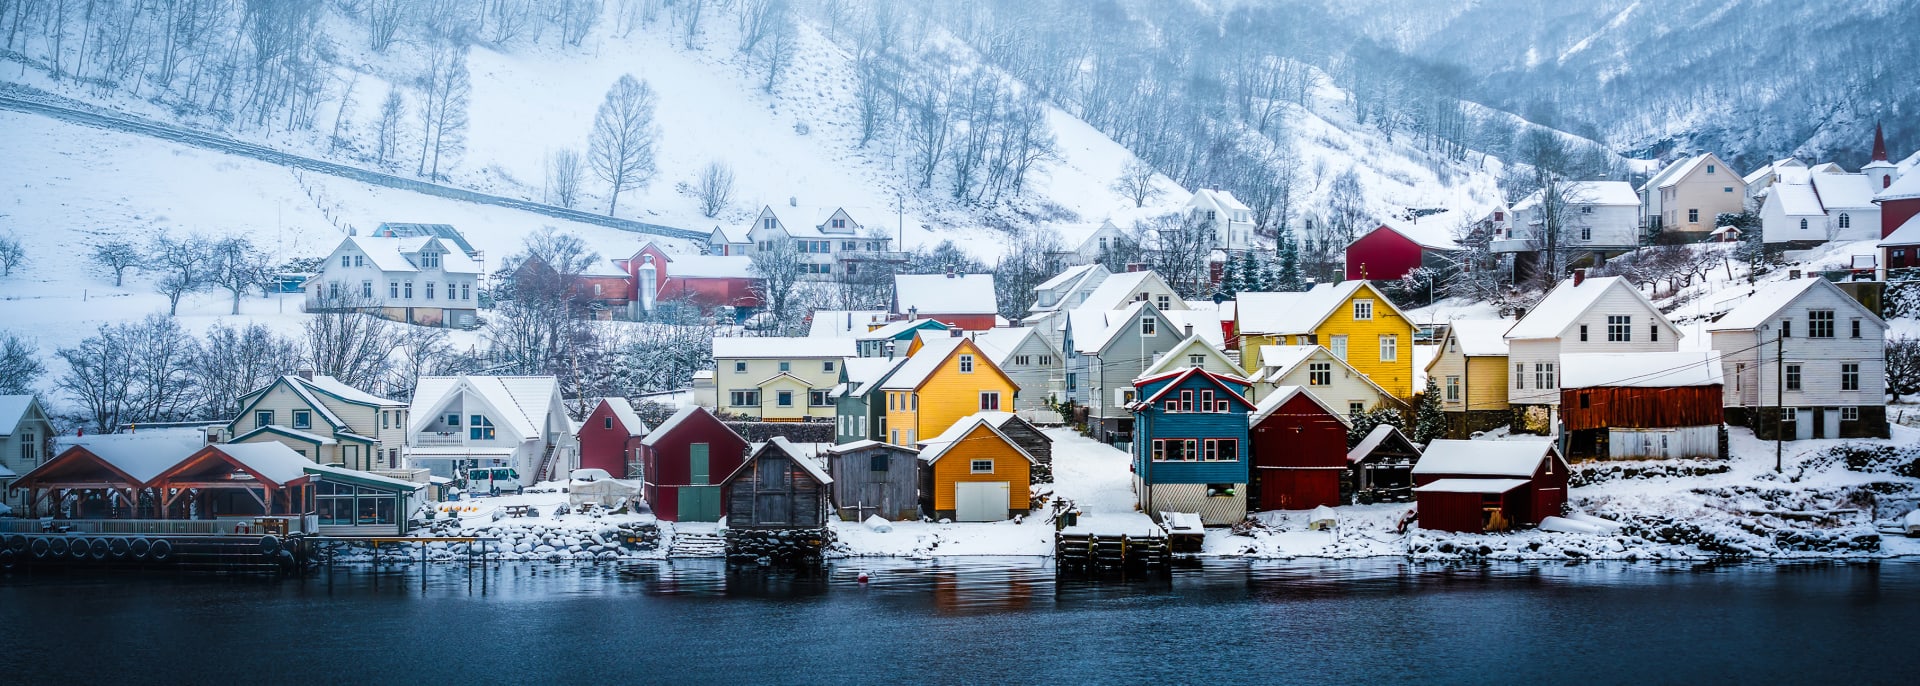 Ufer des norwegischen Fjords, Norwegen